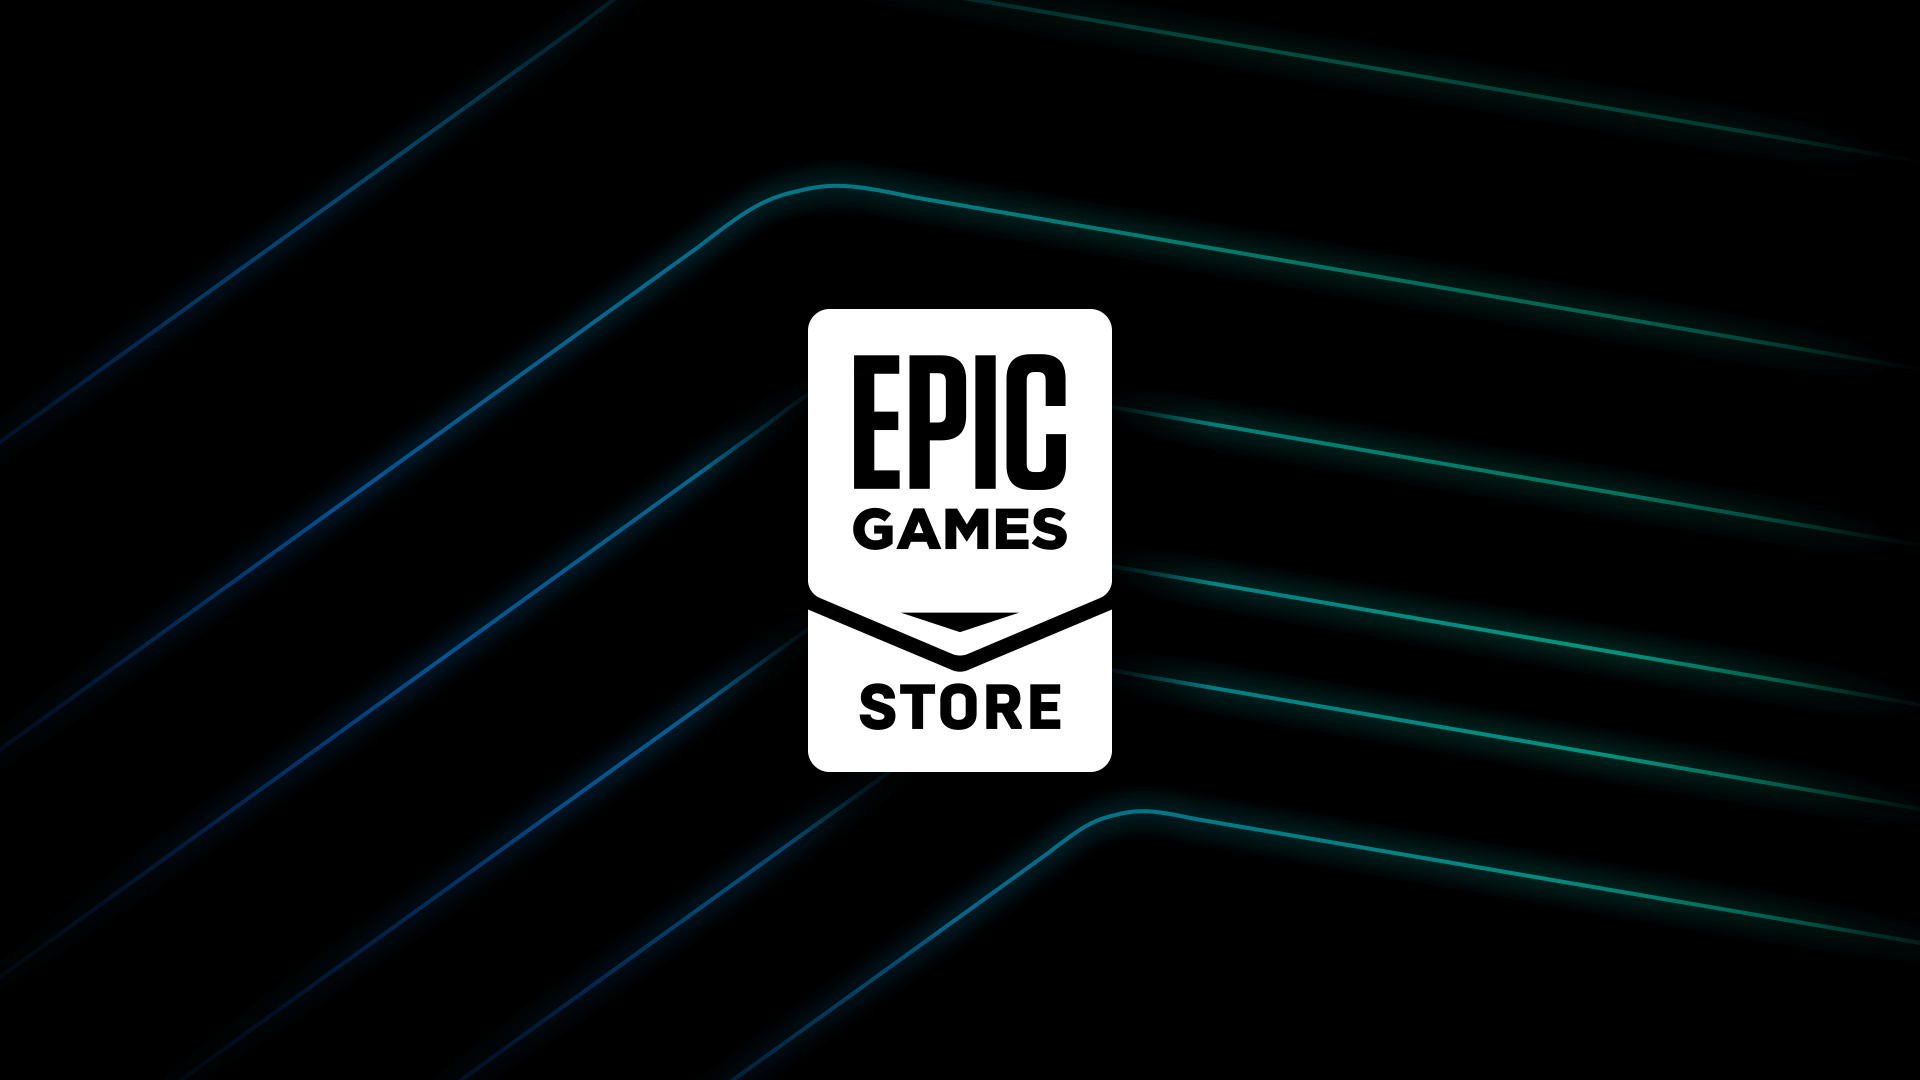 Anche a cinque anni dal lancio, l'Epic Games Store non è ancora redditizio